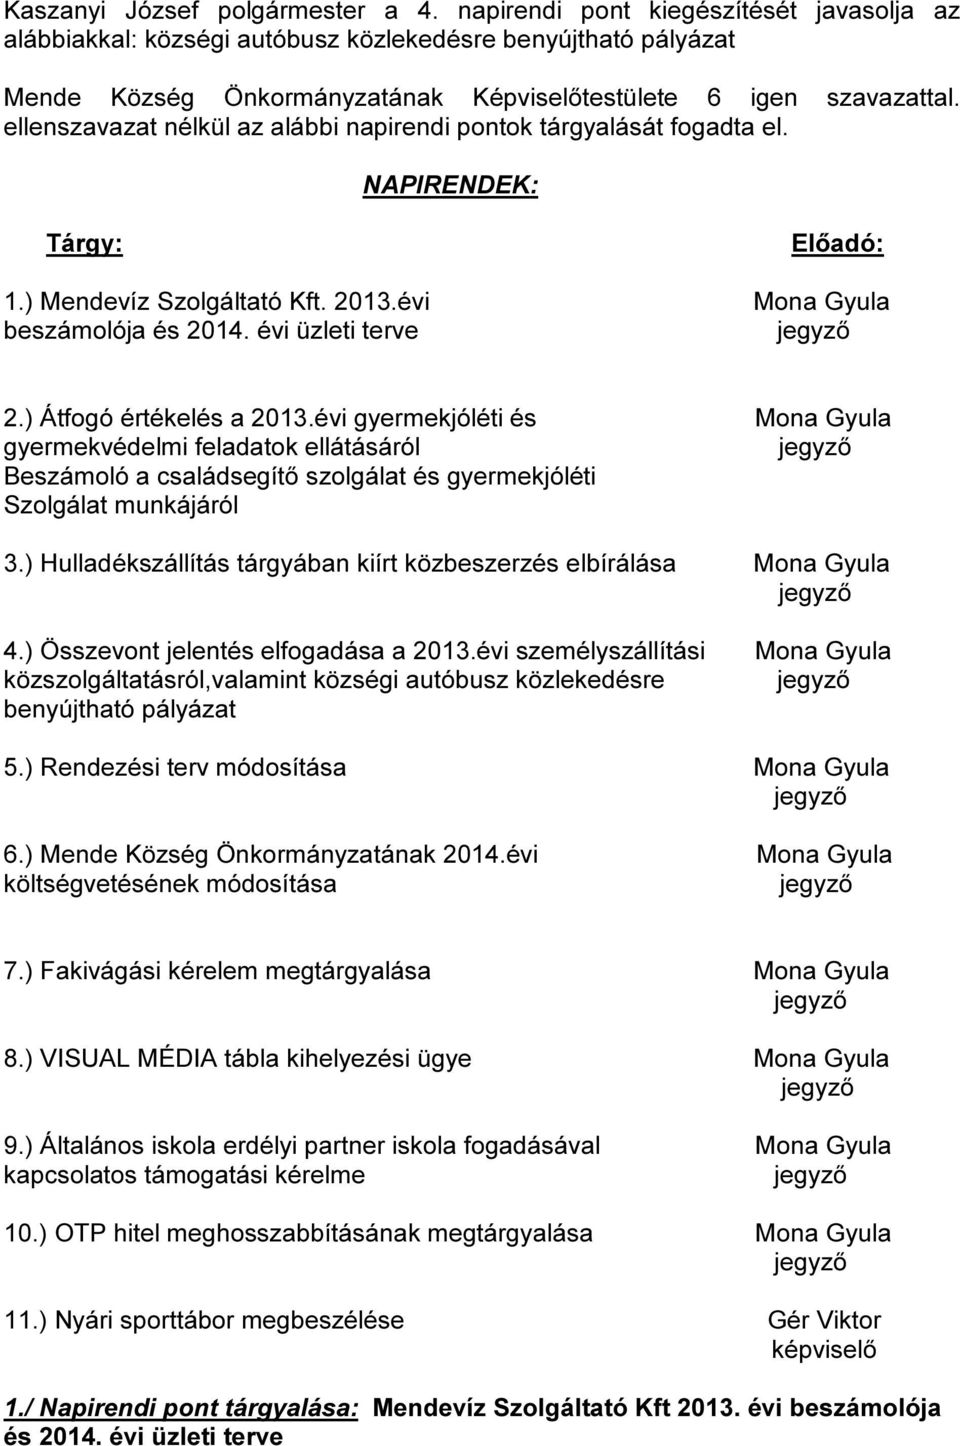 ellenszavazat nélkül az alábbi napirendi pontok tárgyalását fogadta el. NAPIRENDEK: Tárgy: Előadó: 1.) Mendevíz Szolgáltató Kft. 2013.évi Mona Gyula beszámolója és 2014. évi üzleti terve 2.